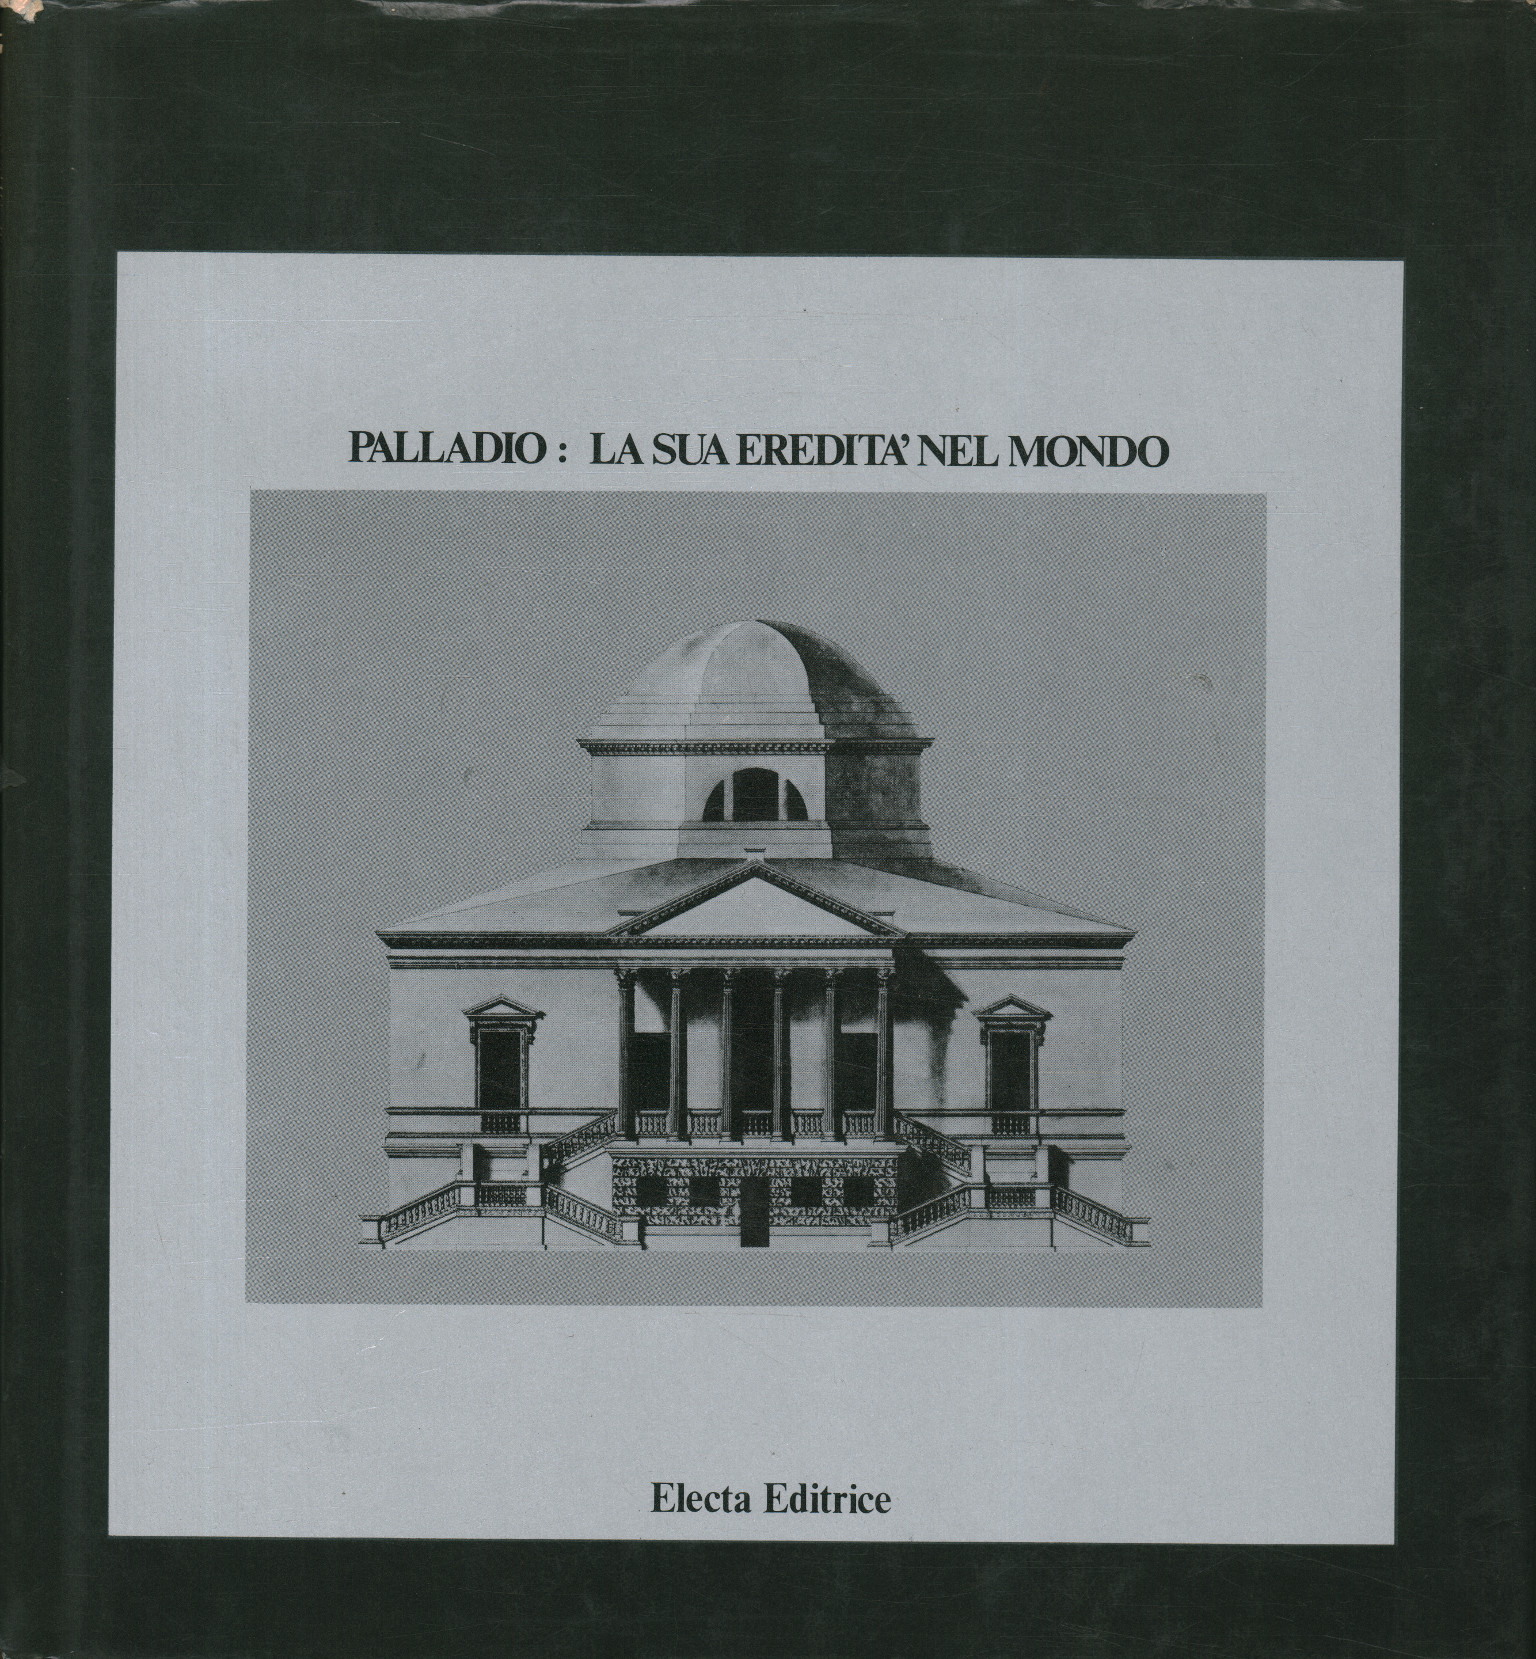 Palladio: su herencia en el mundo